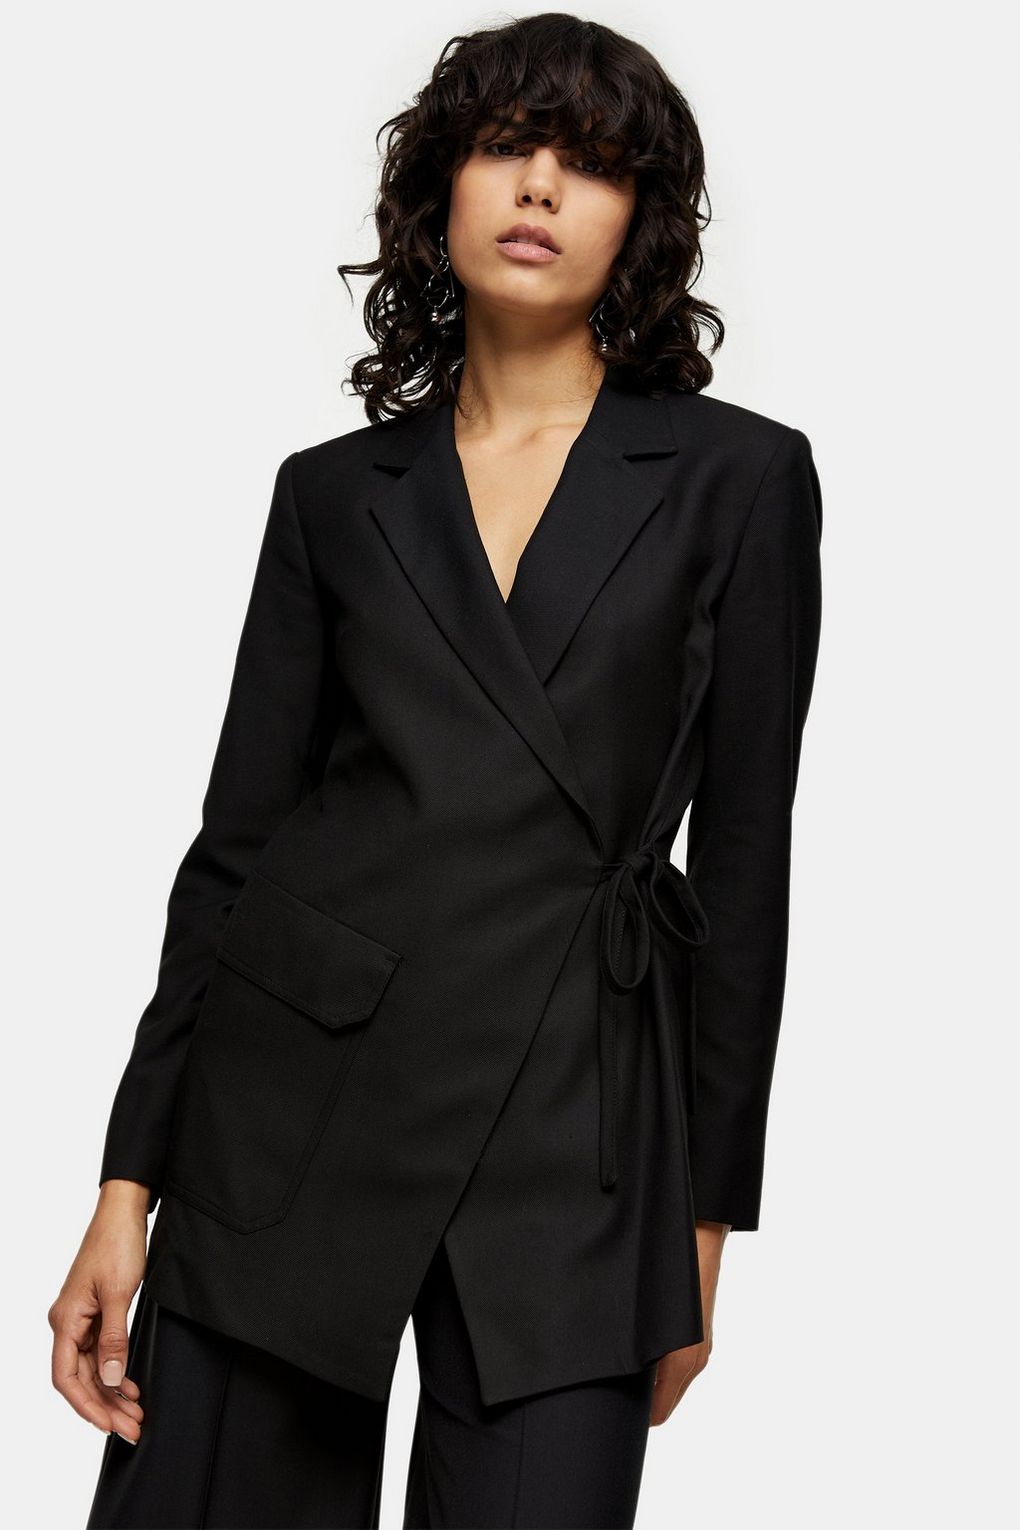 Topshop Boutique + Black Wrap Suit Blazer